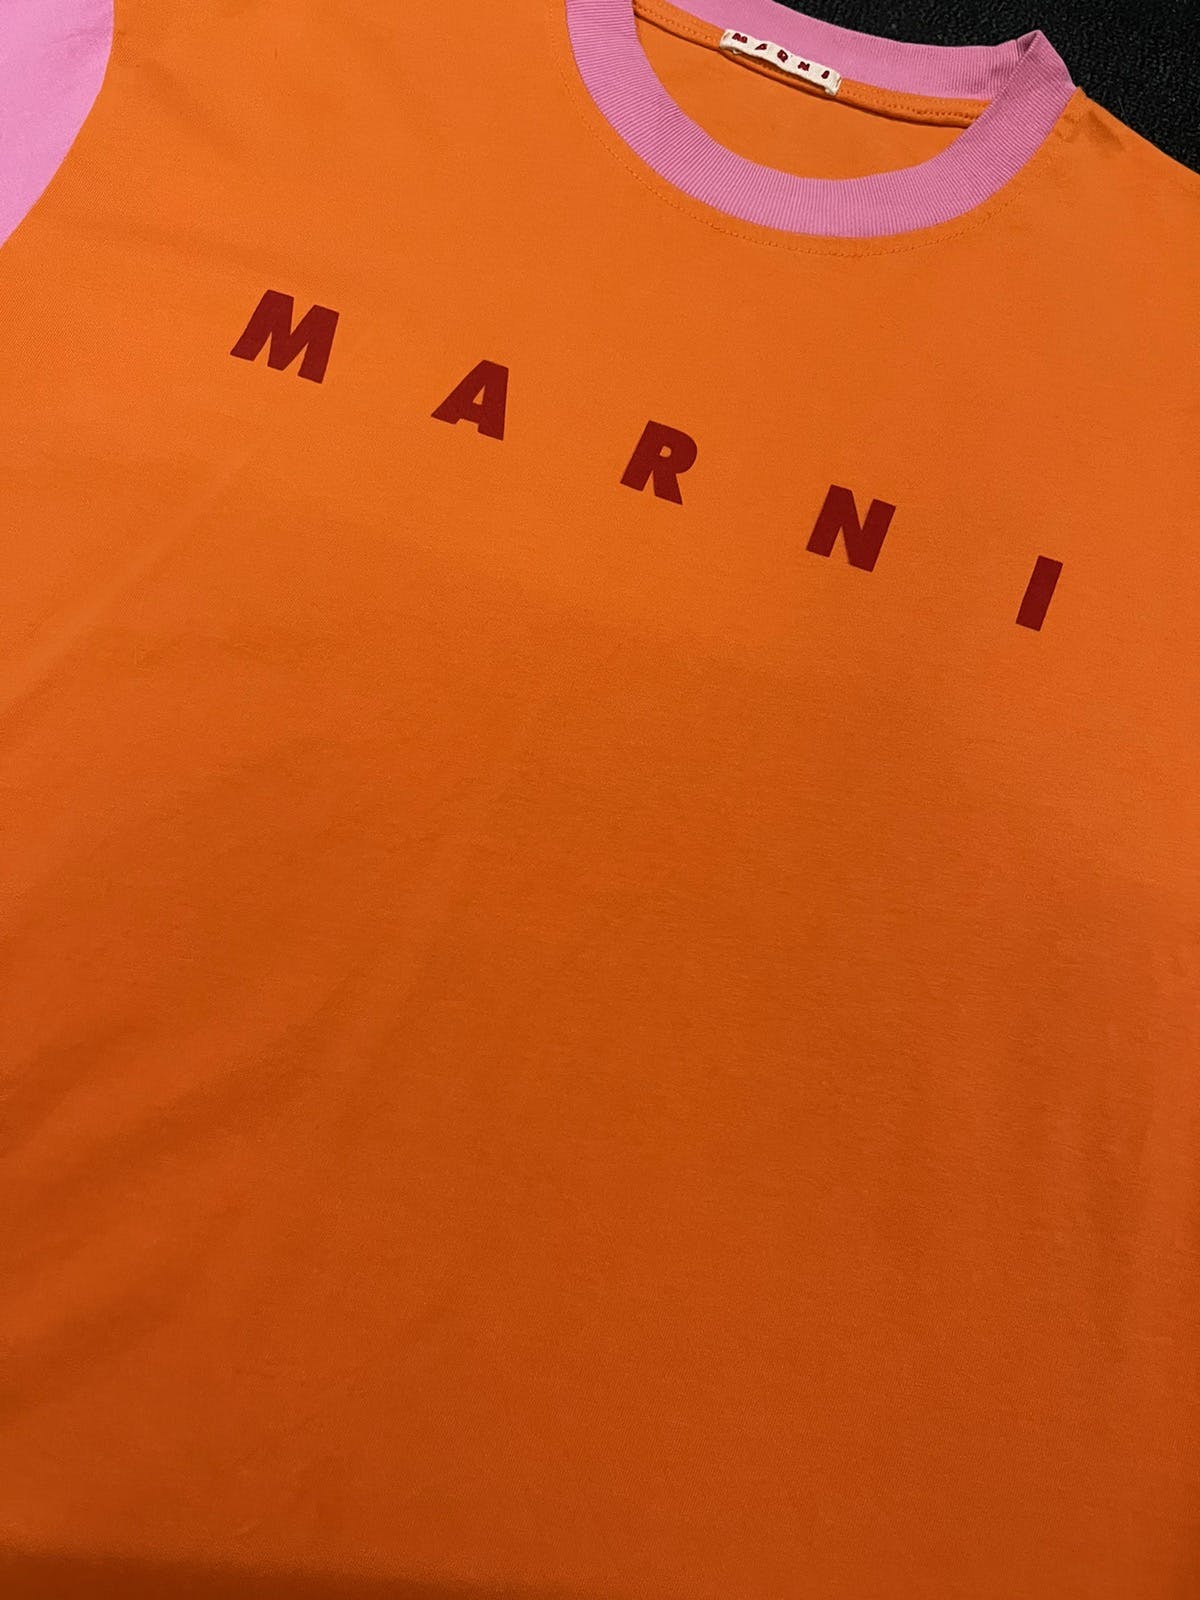 Marni Tshirt spellout - 5